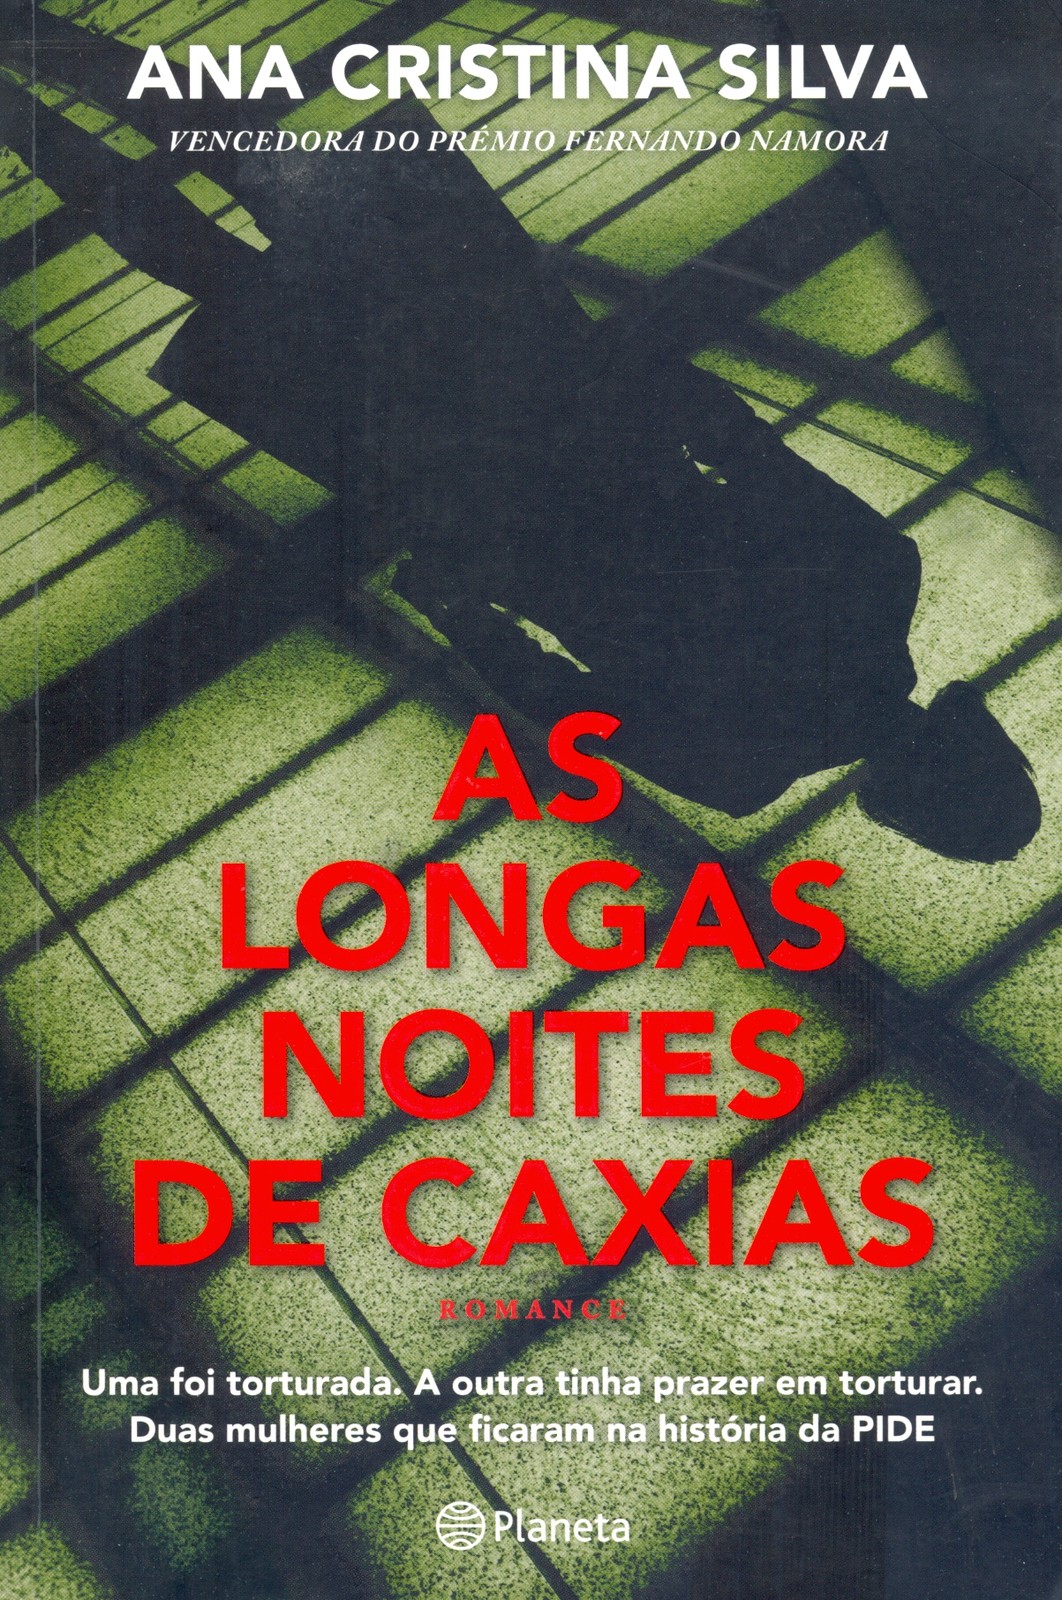 Ana Cristina Silva - As Longas Noites de Caxias